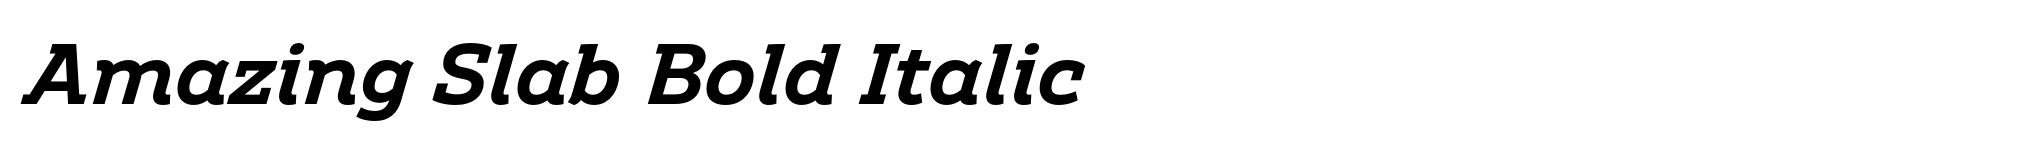 Amazing Slab Bold Italic image